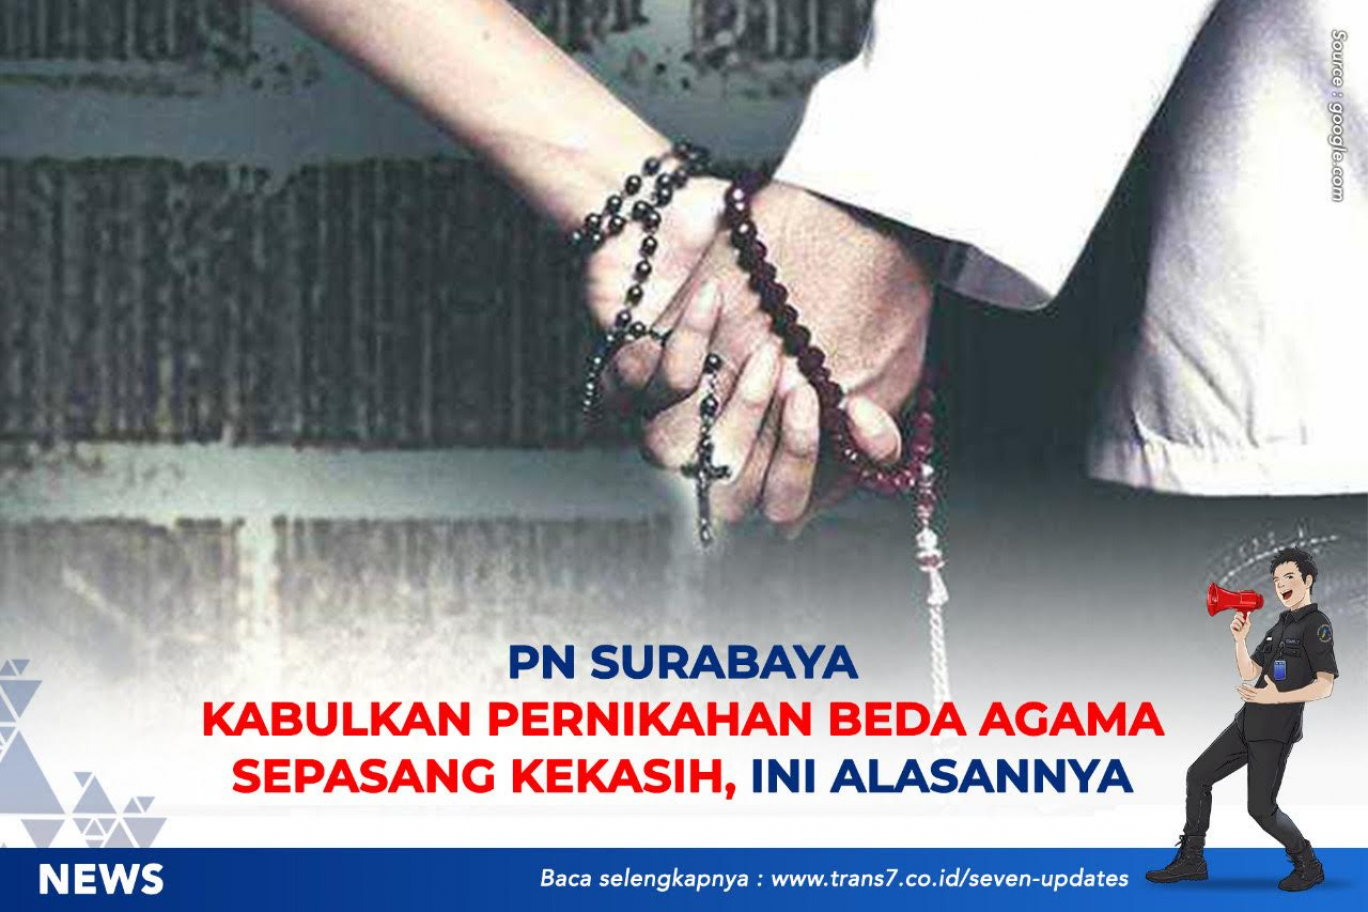 PN Surabaya Kabulkan Pernikahan Beda Agama Sepasang Kekasih, Ini Alasannya